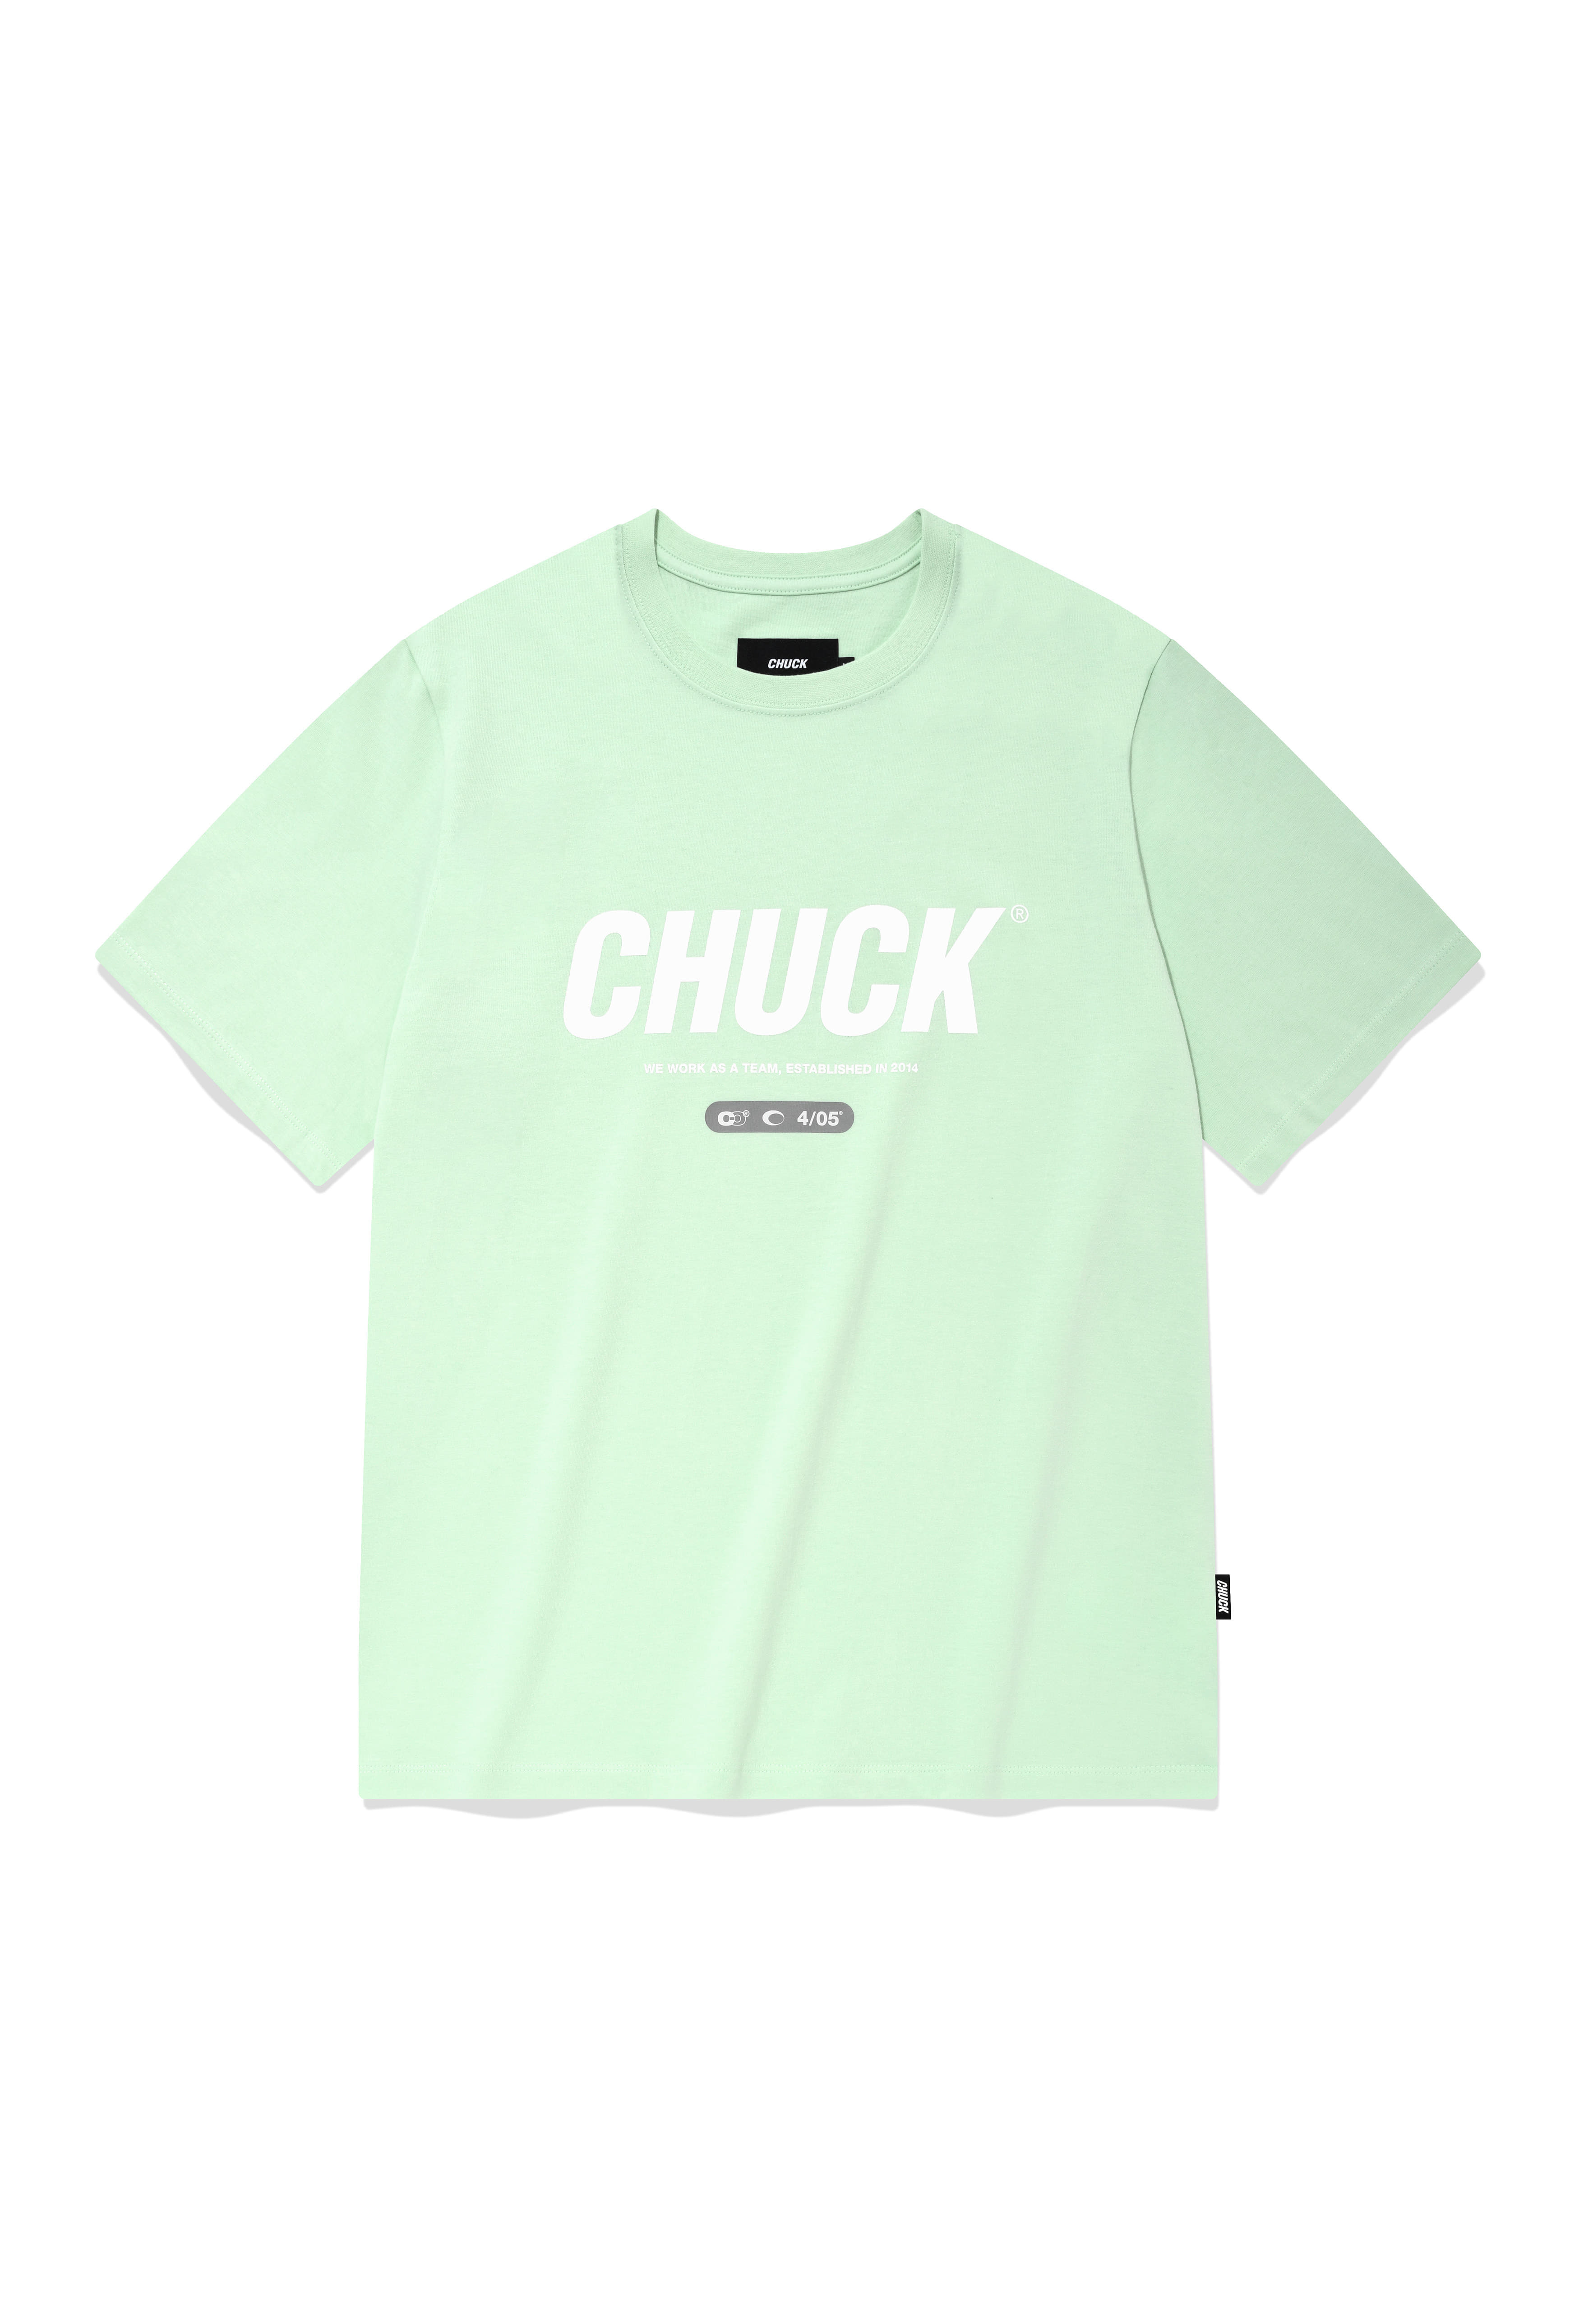 Detail Chucks And Pearls T Shirt Amazon Nomer 49